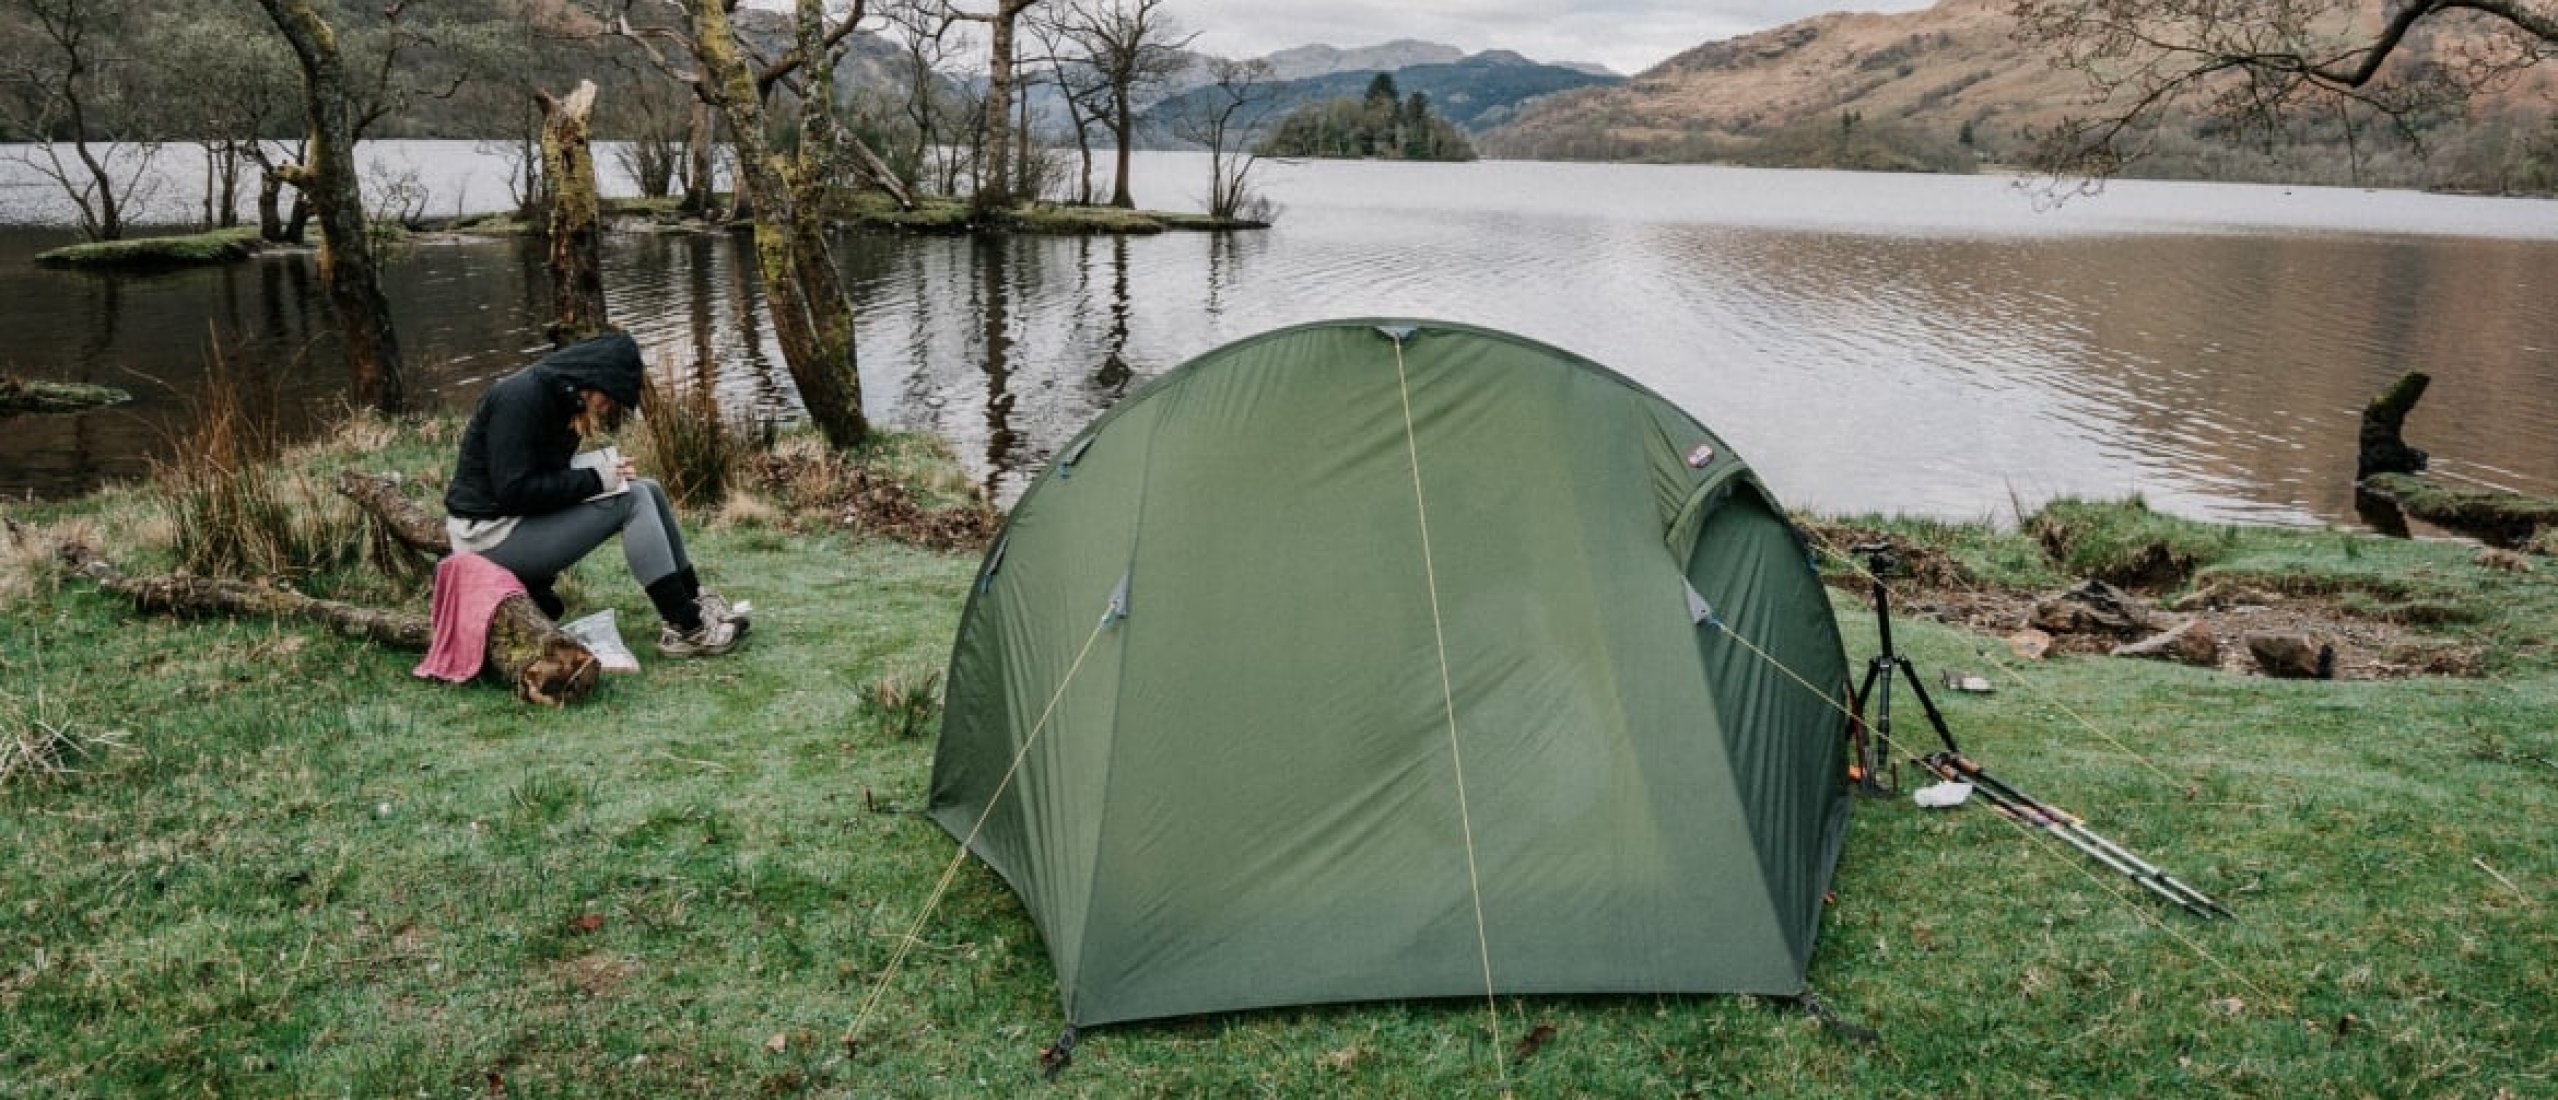 Camping management zones: wildkampeerverbod in Schotland